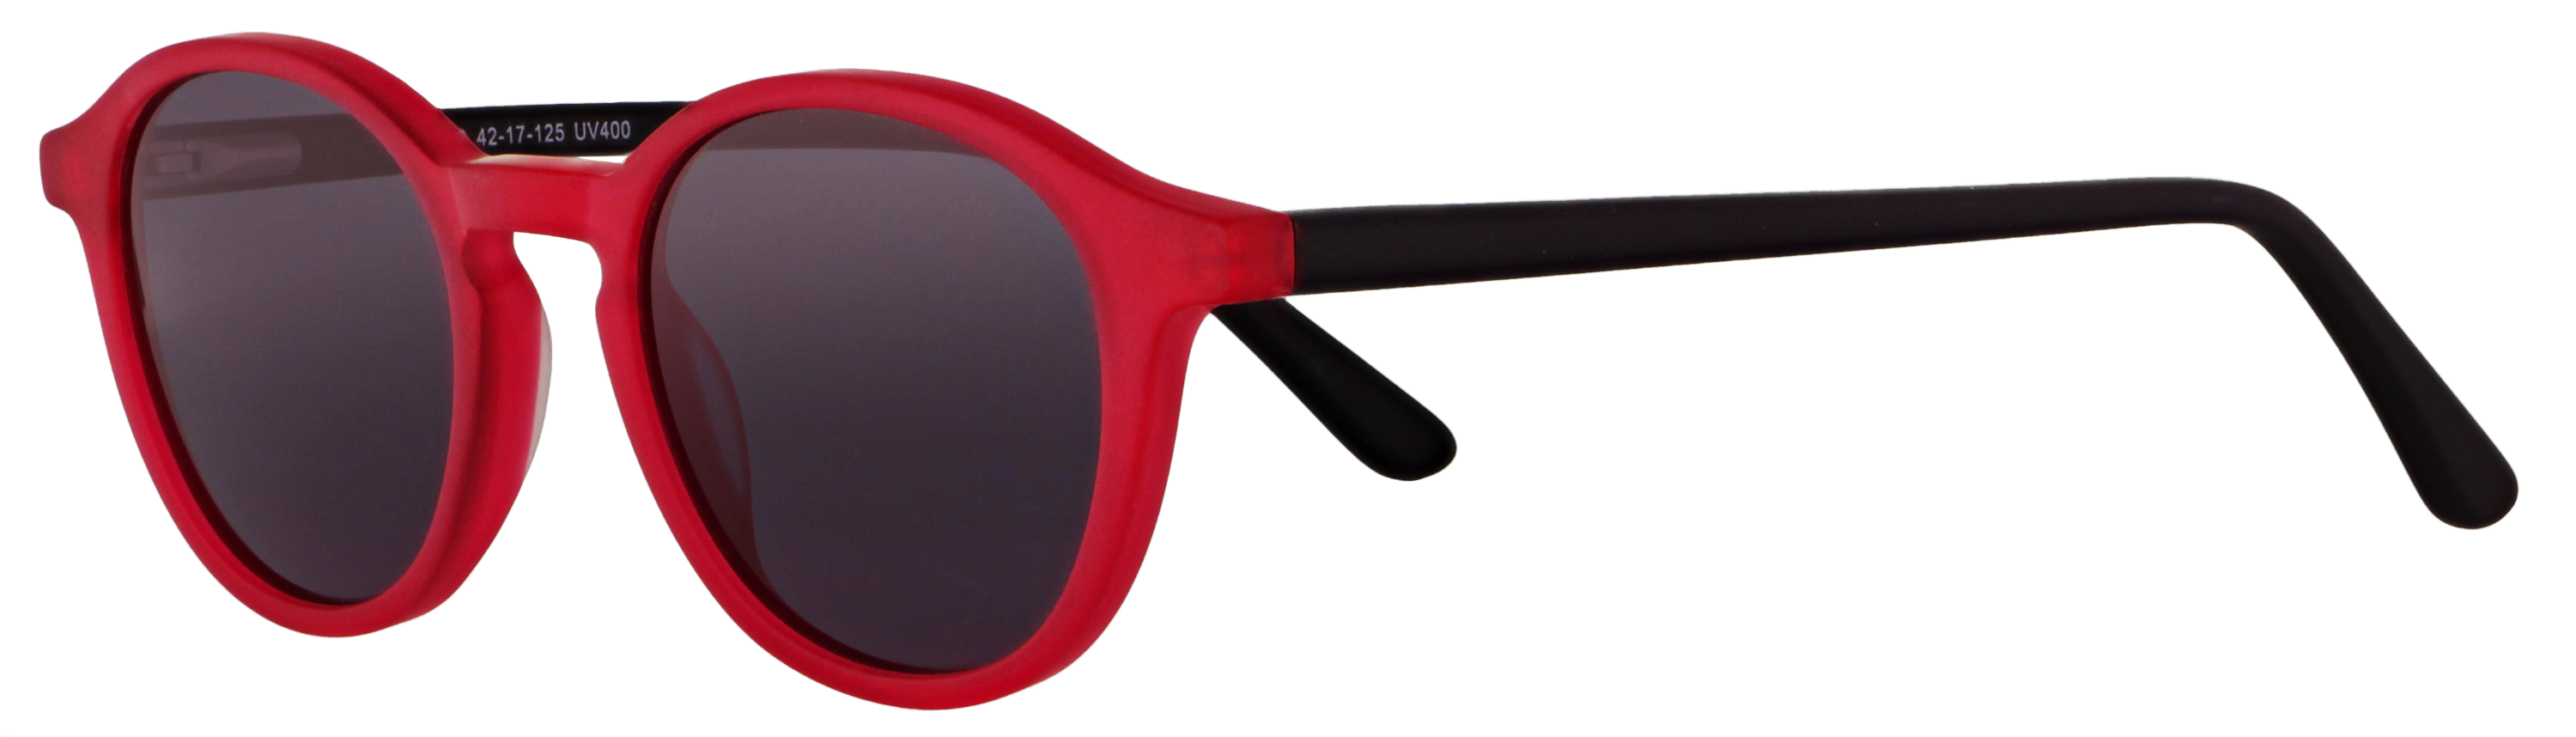 Das Bild zeigt die Sonnenbrille 718753 von der Marke Abele Optik in Rot.